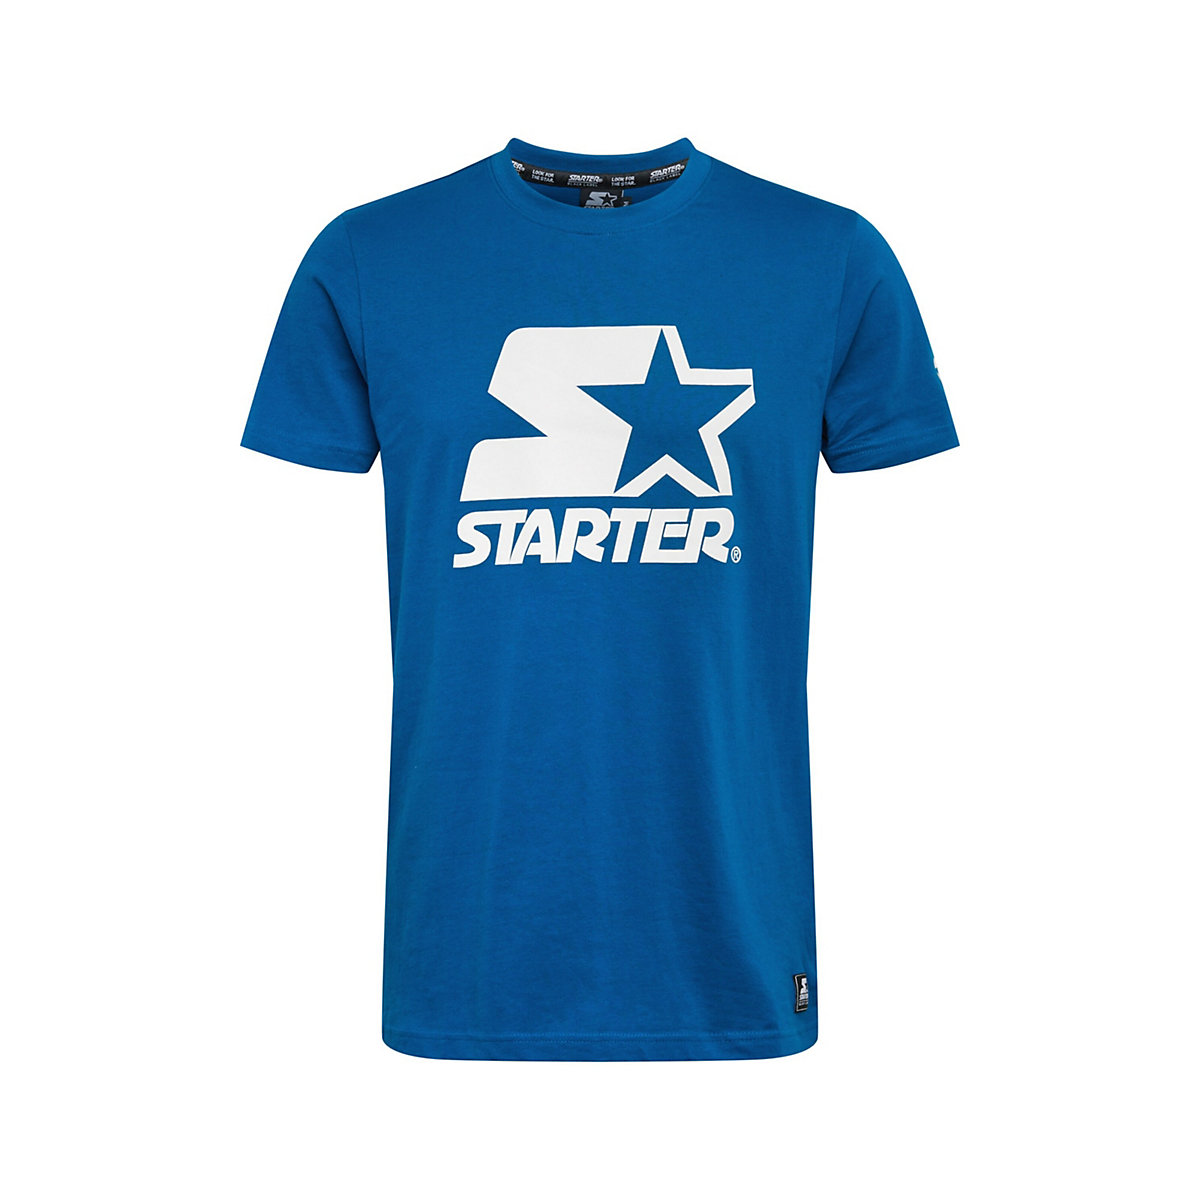 STARTER® BLACK LABEL STARTER BLACK LABEL Shirt blau/weiß